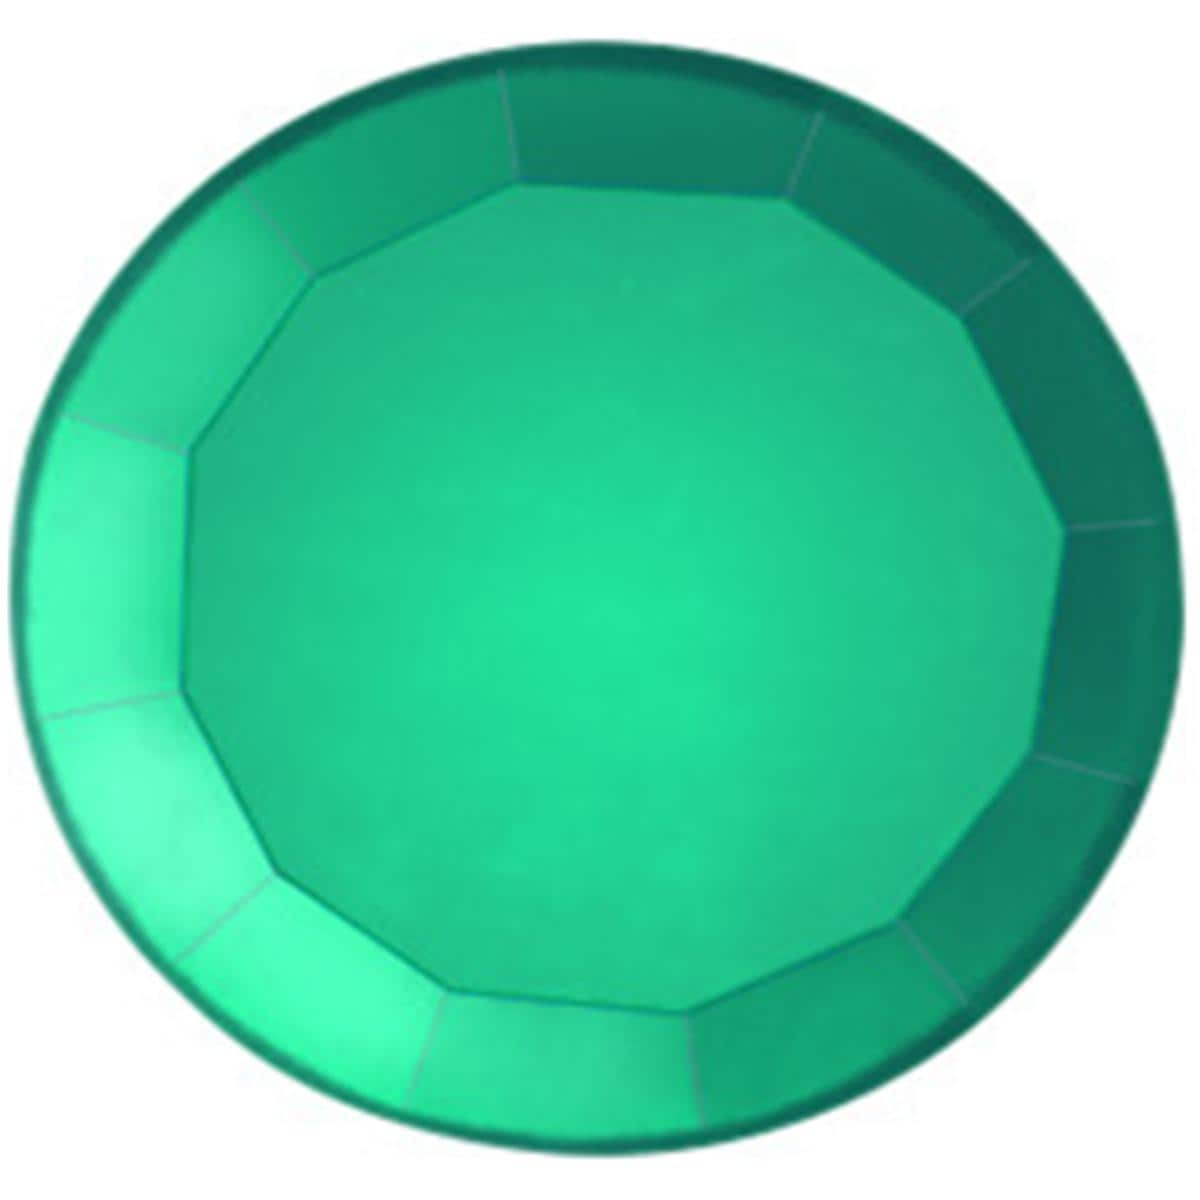 Prodental® Jewels, Ø 1,8 mm - Grün / Emerald, Packung 5 Stück